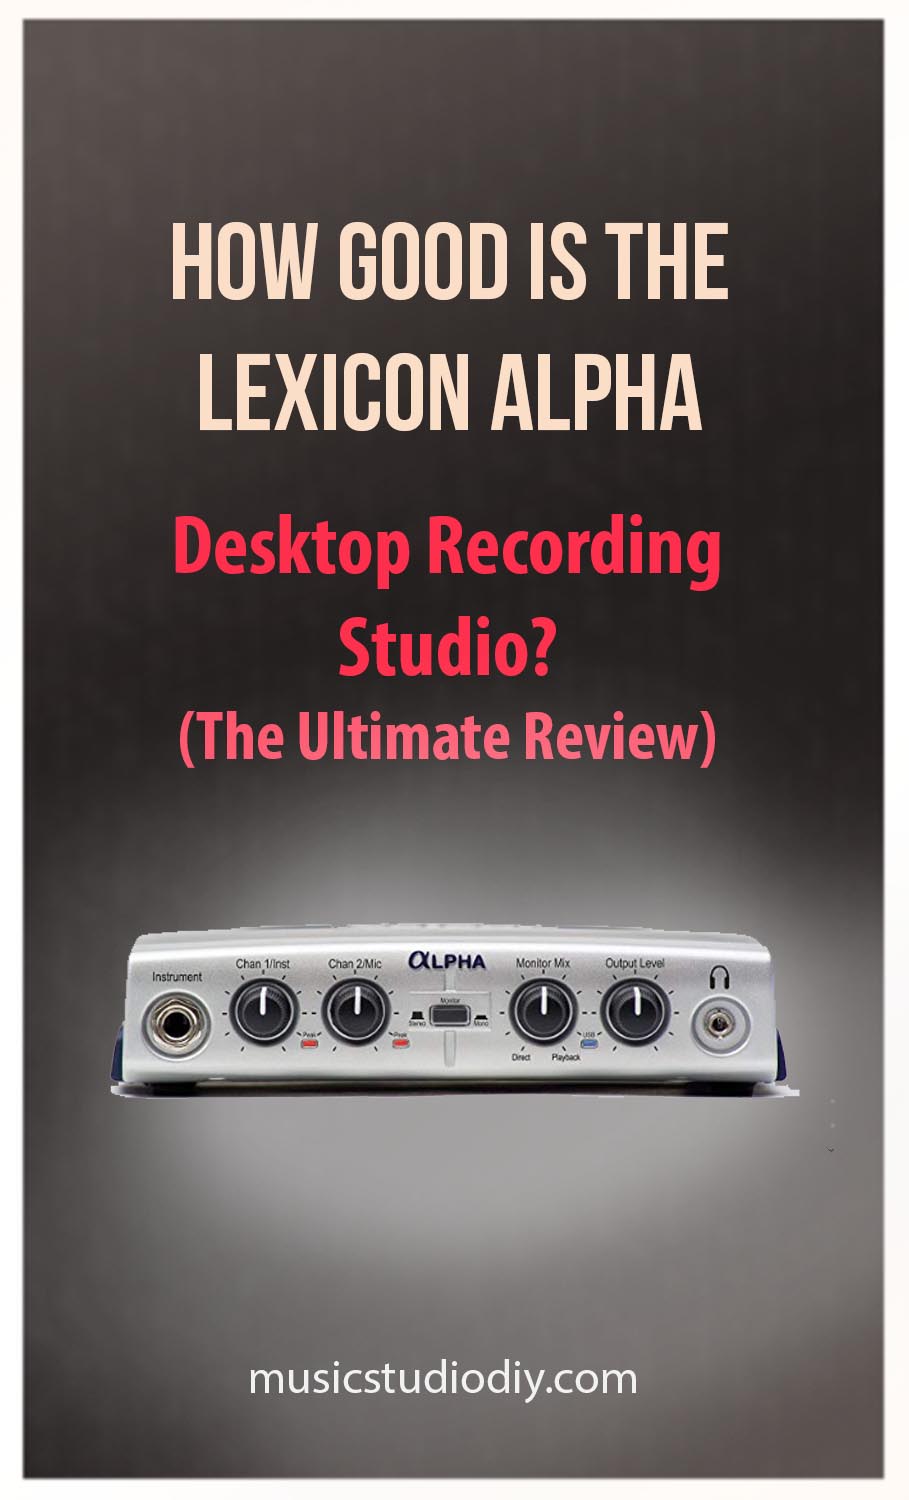 Lexicon Alpha Desktop Recording Studio